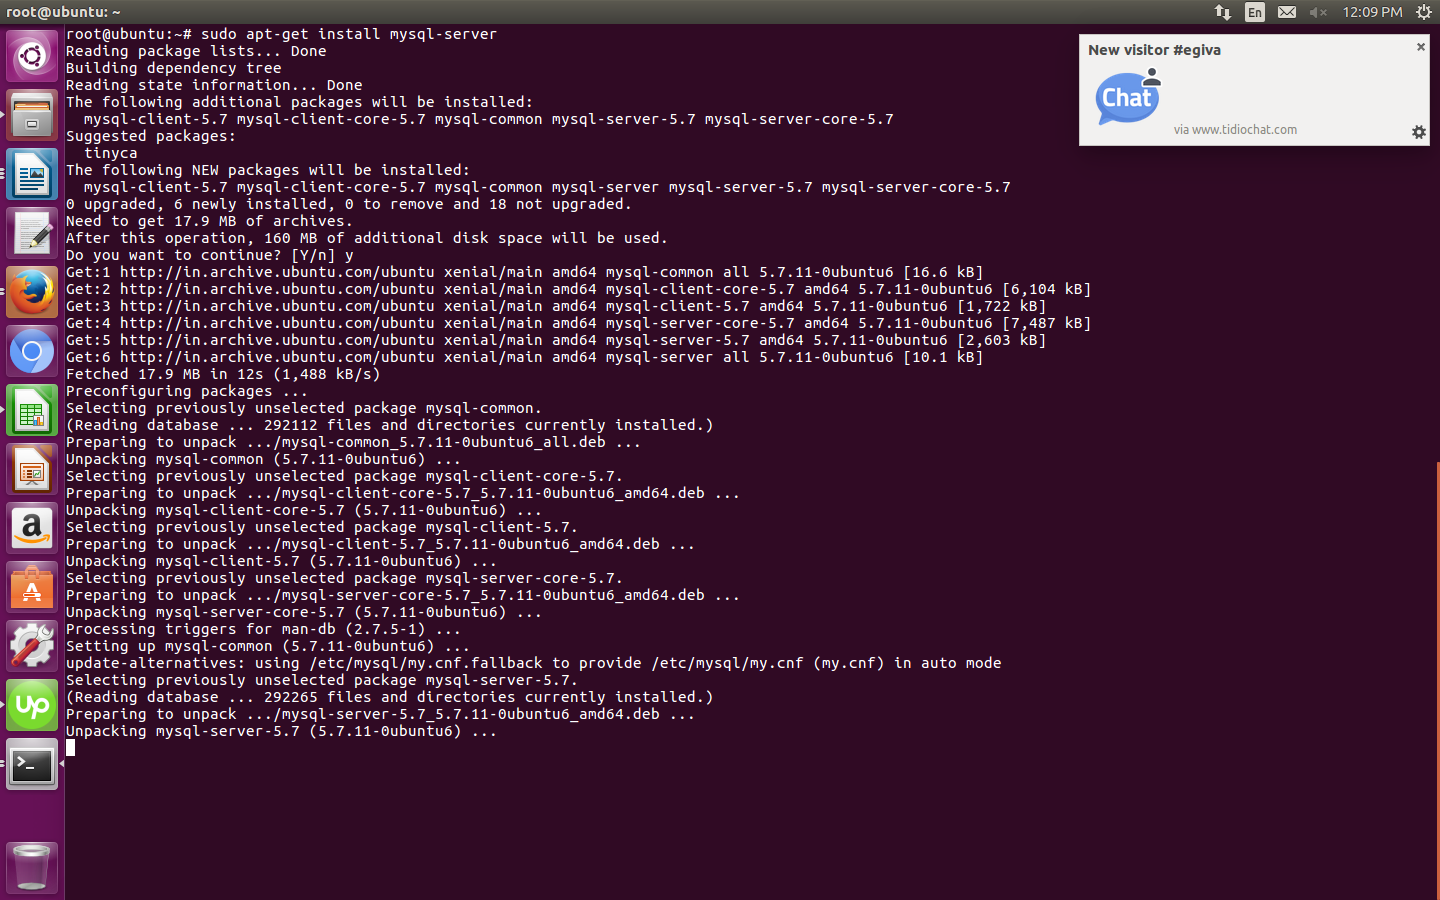 Как установить и начать использовать postgresql в ubuntu 16.04